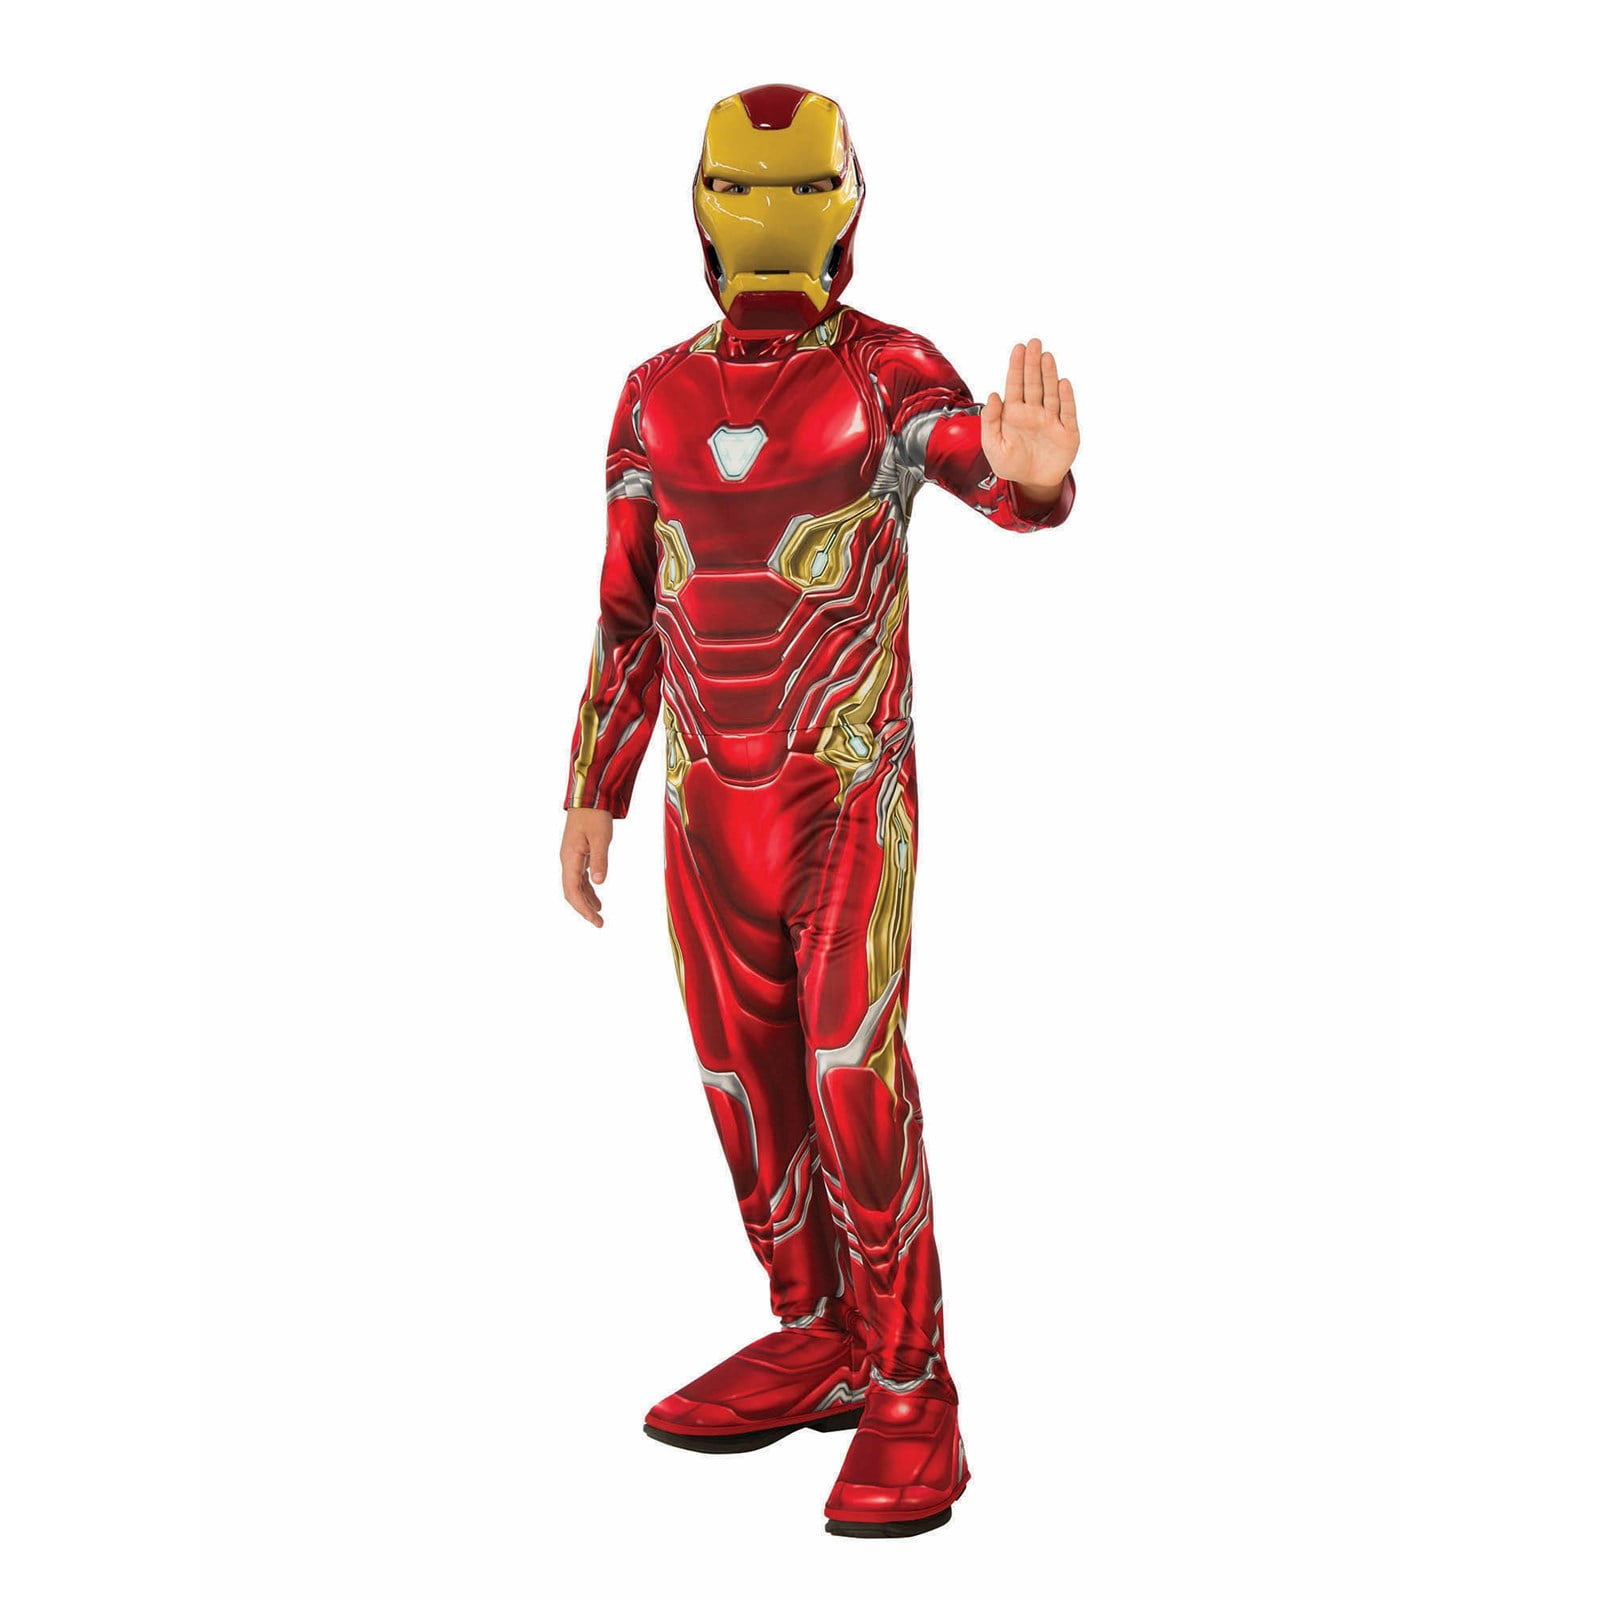 Marvel Iron Man 3 Mark 42 Boys Halloween Muscle Costume Small 4-6